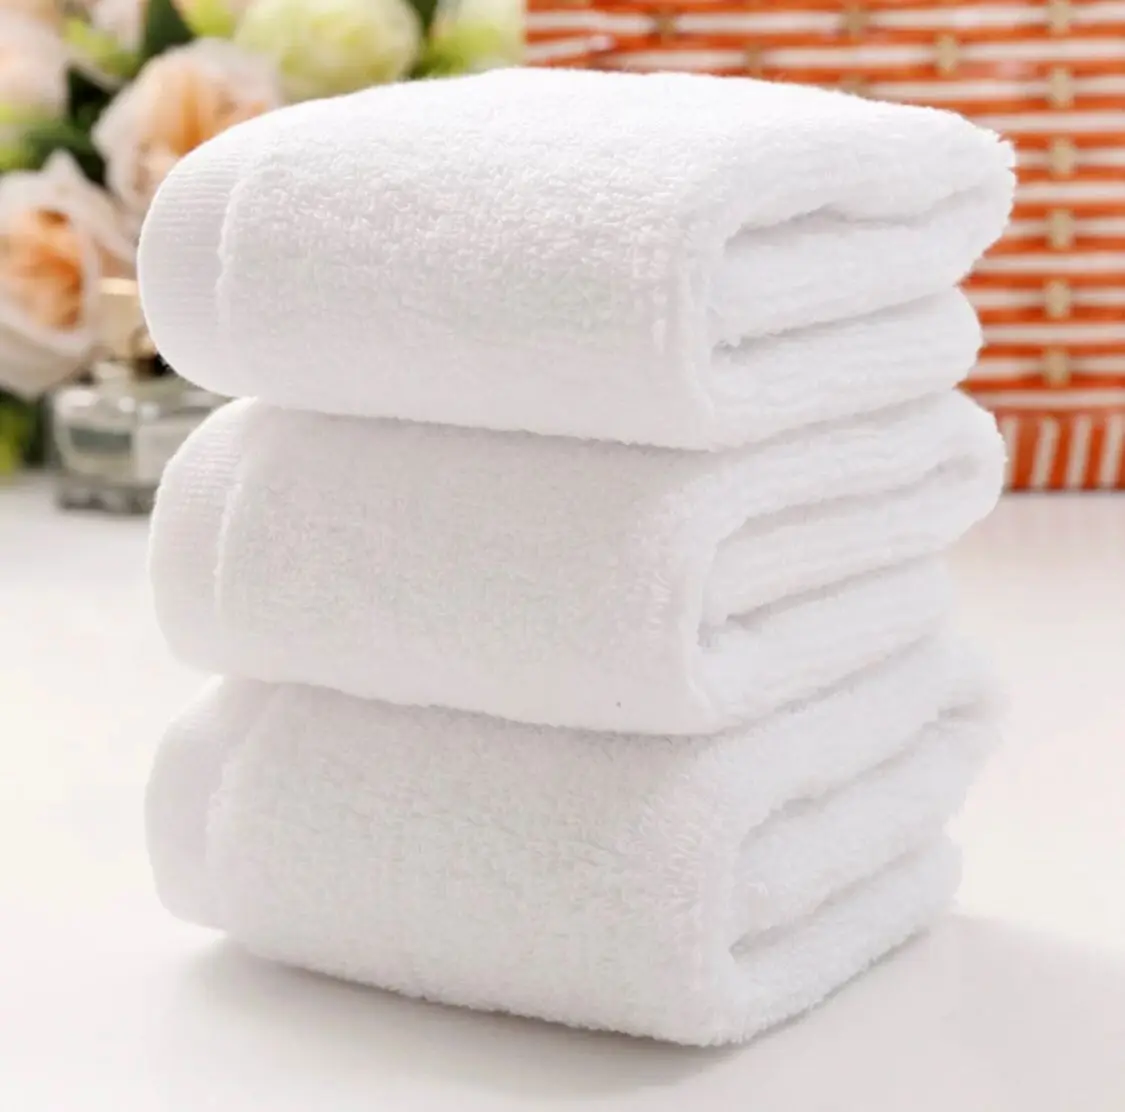 полотенце в гостинице